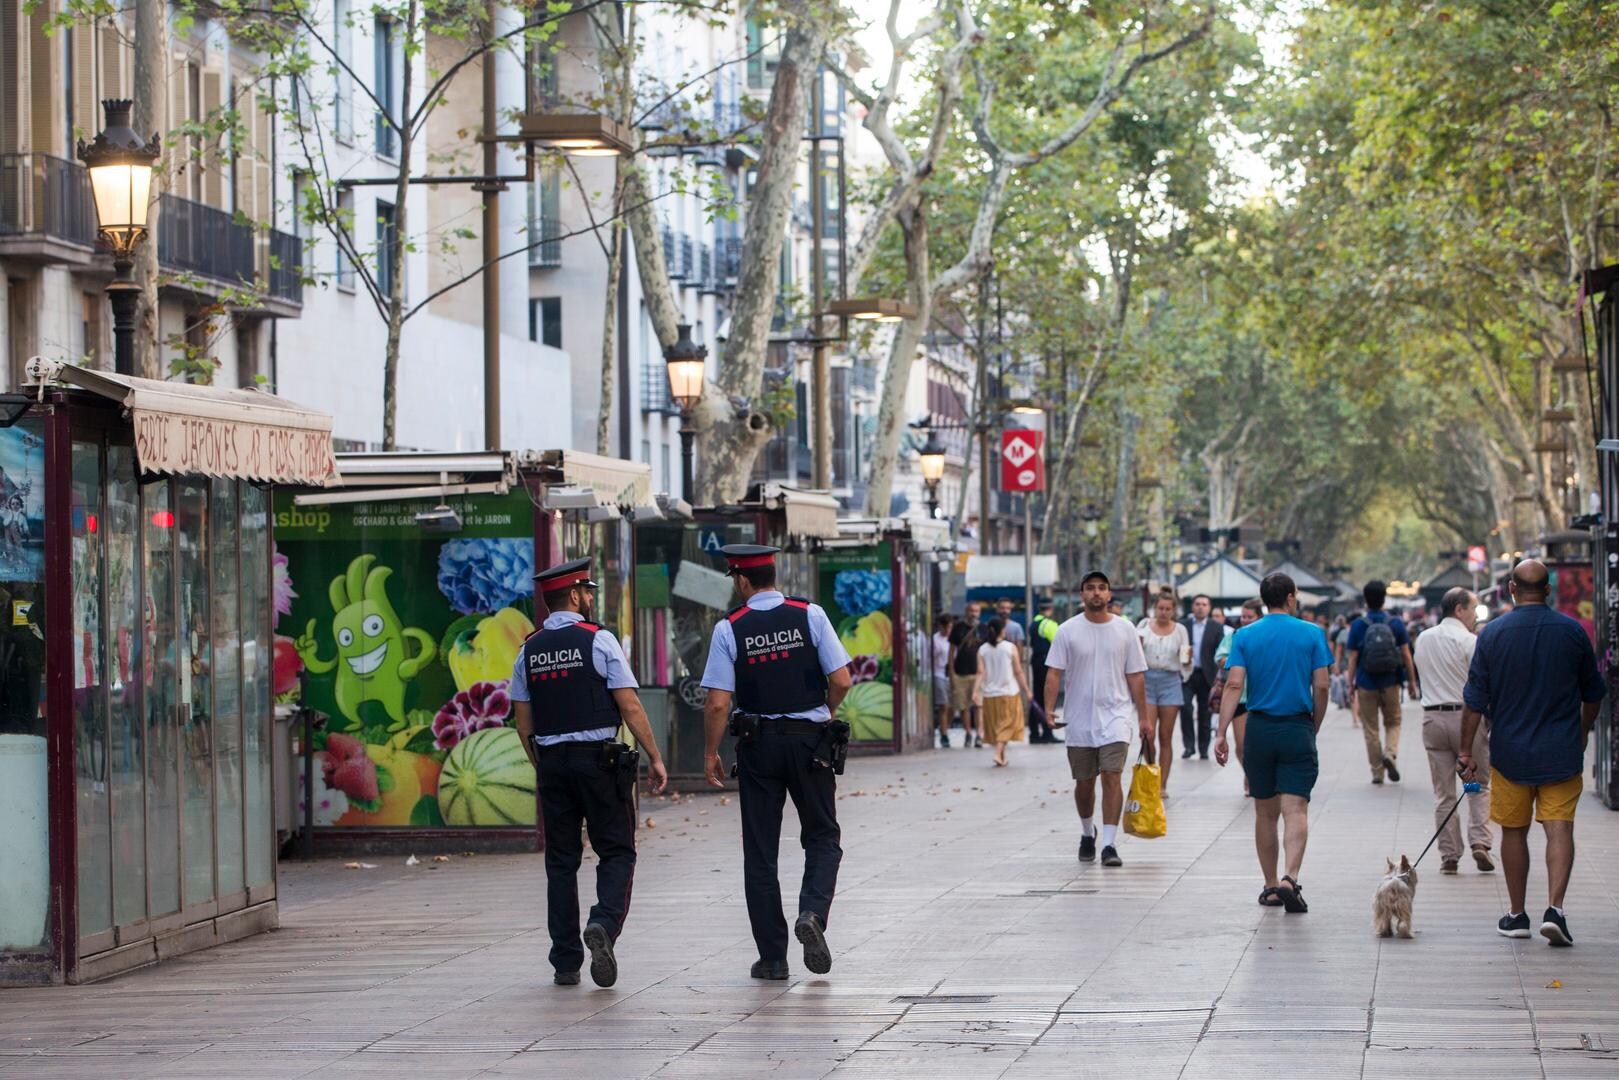 Buitenlandse Zaken past reisadvies aan: "Drukke plaatsen in Spanje mogelijk doelwit van aanslagen"